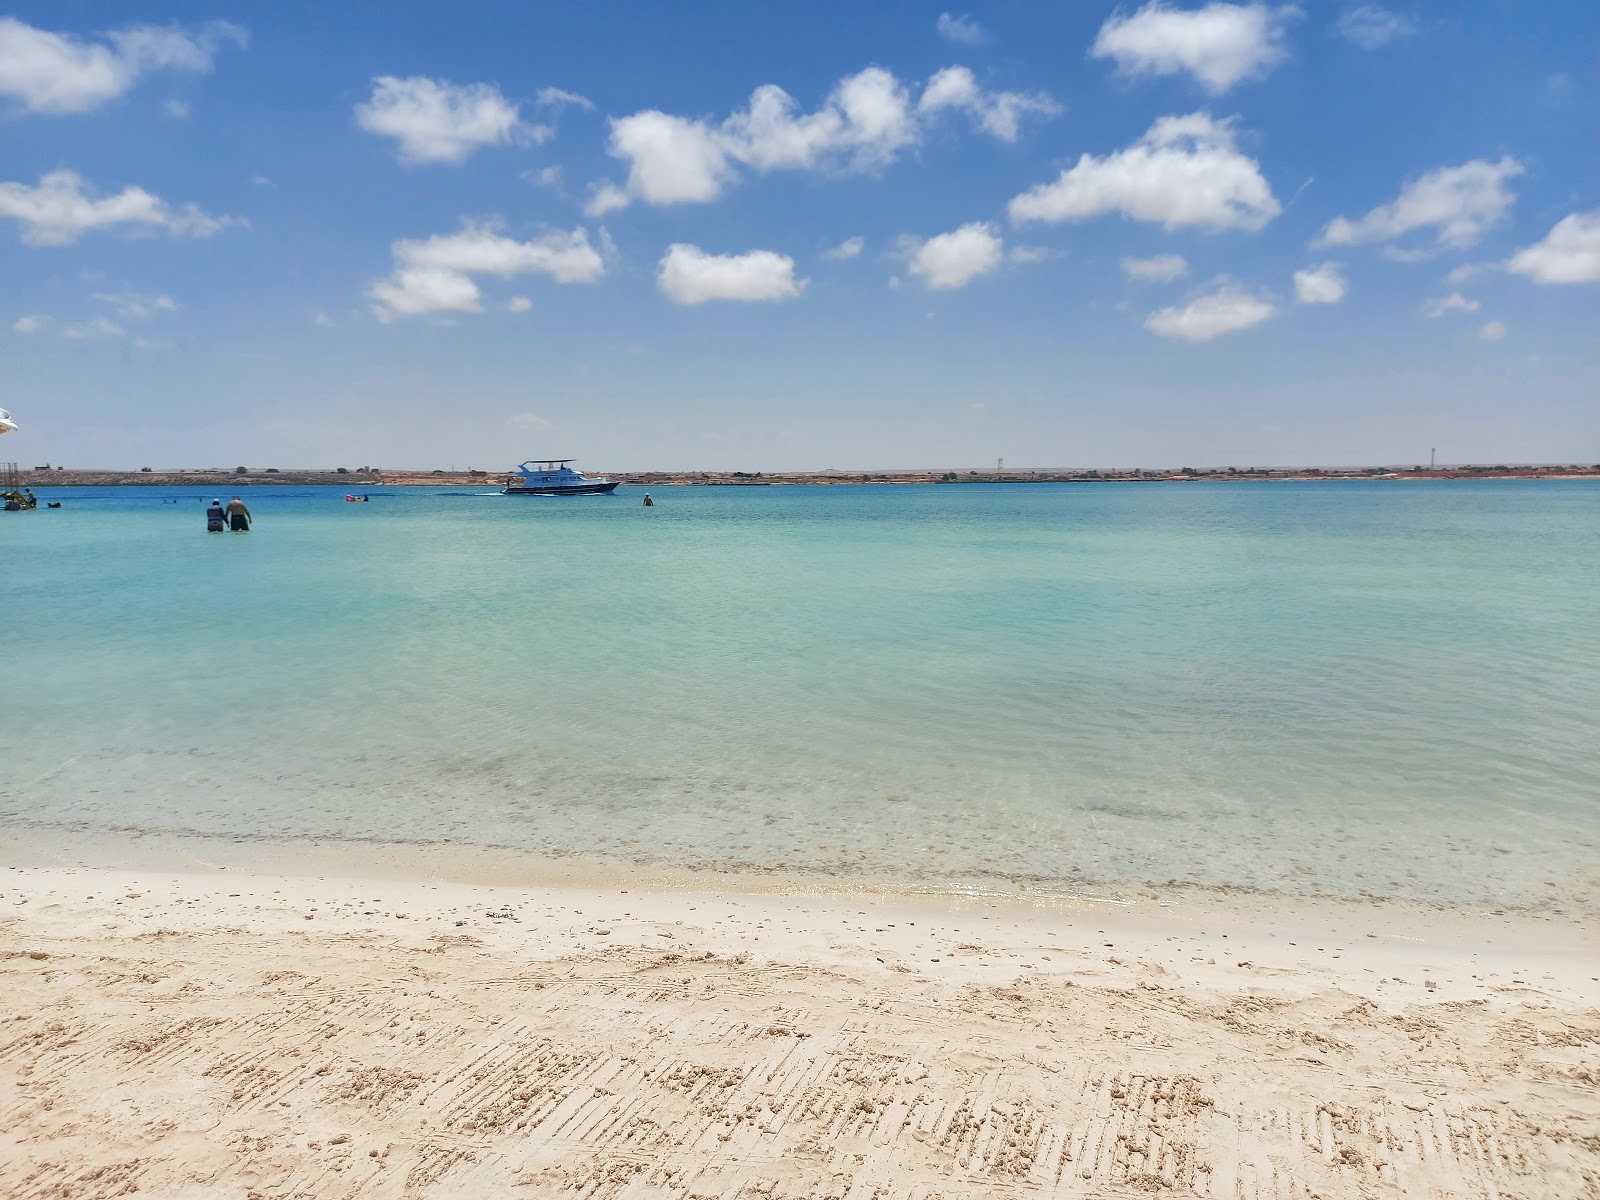 Zdjęcie Eagles Resort in Cleopatra Beach z przestronna plaża